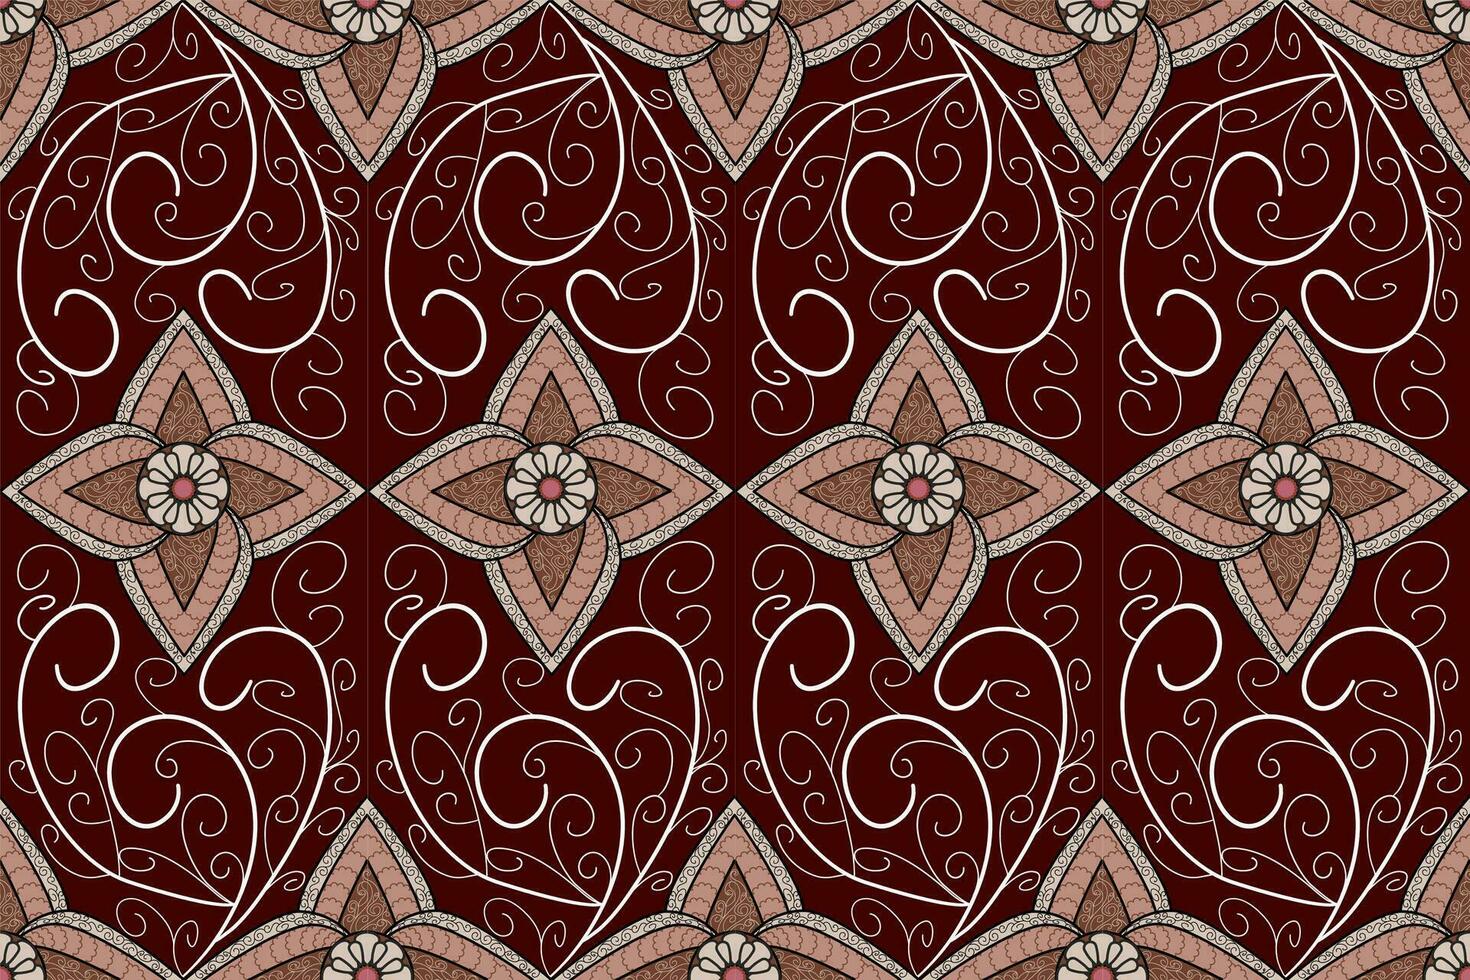 geometrico etnico orientale modello tradizionale design per tessuto,tappeto,abbigliamento,tessile,batik.etnico astratto ikat senza soluzione di continuità modello nel ricamo.tribale stile. vettore